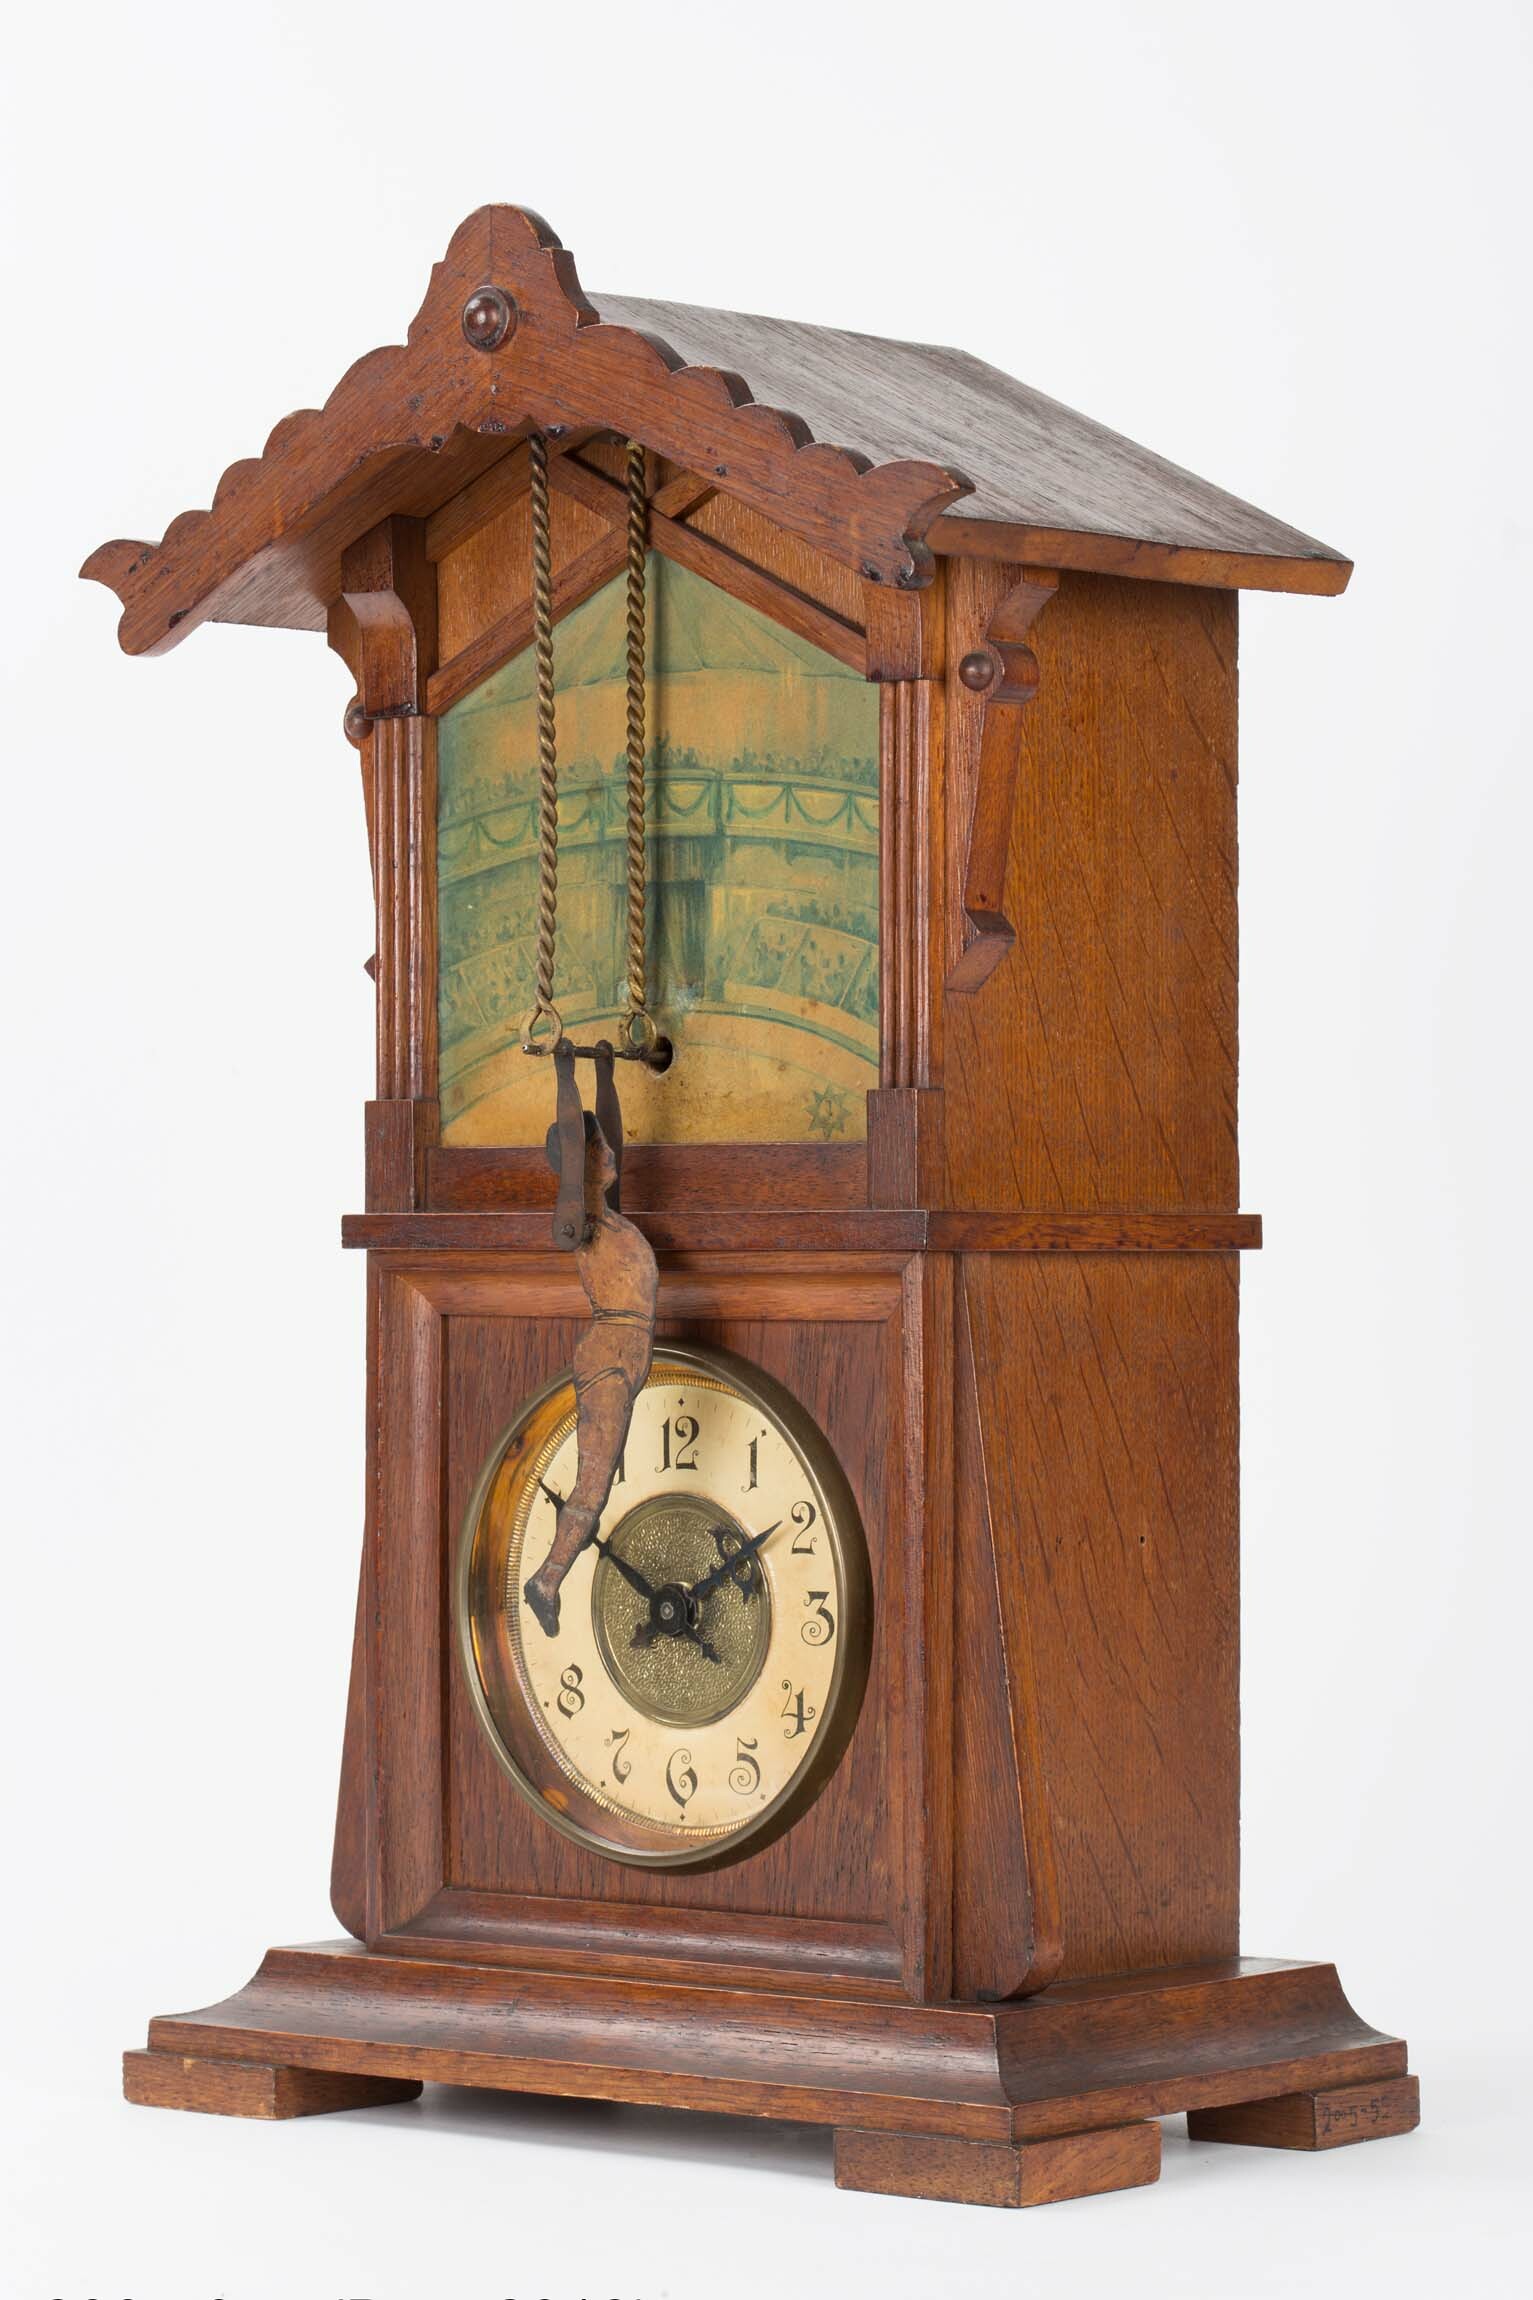 Tischuhr mit Turner, Junghans, Schramberg, um 1900 (Deutsches Uhrenmuseum CC BY-SA)